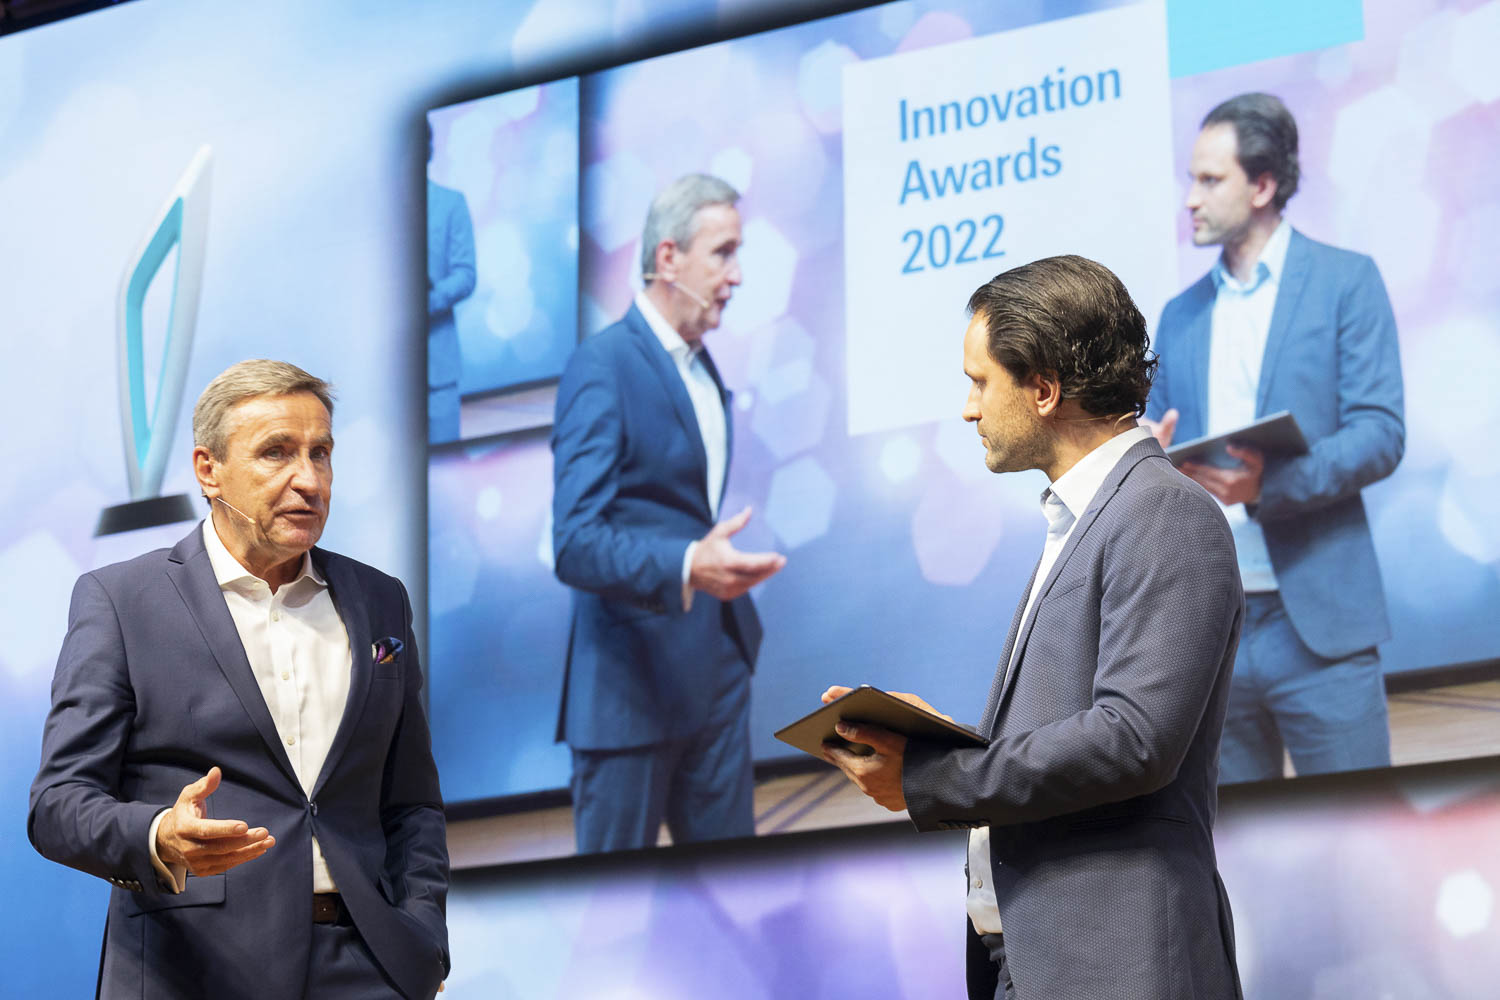 Jens Liebchen Innovation Awards